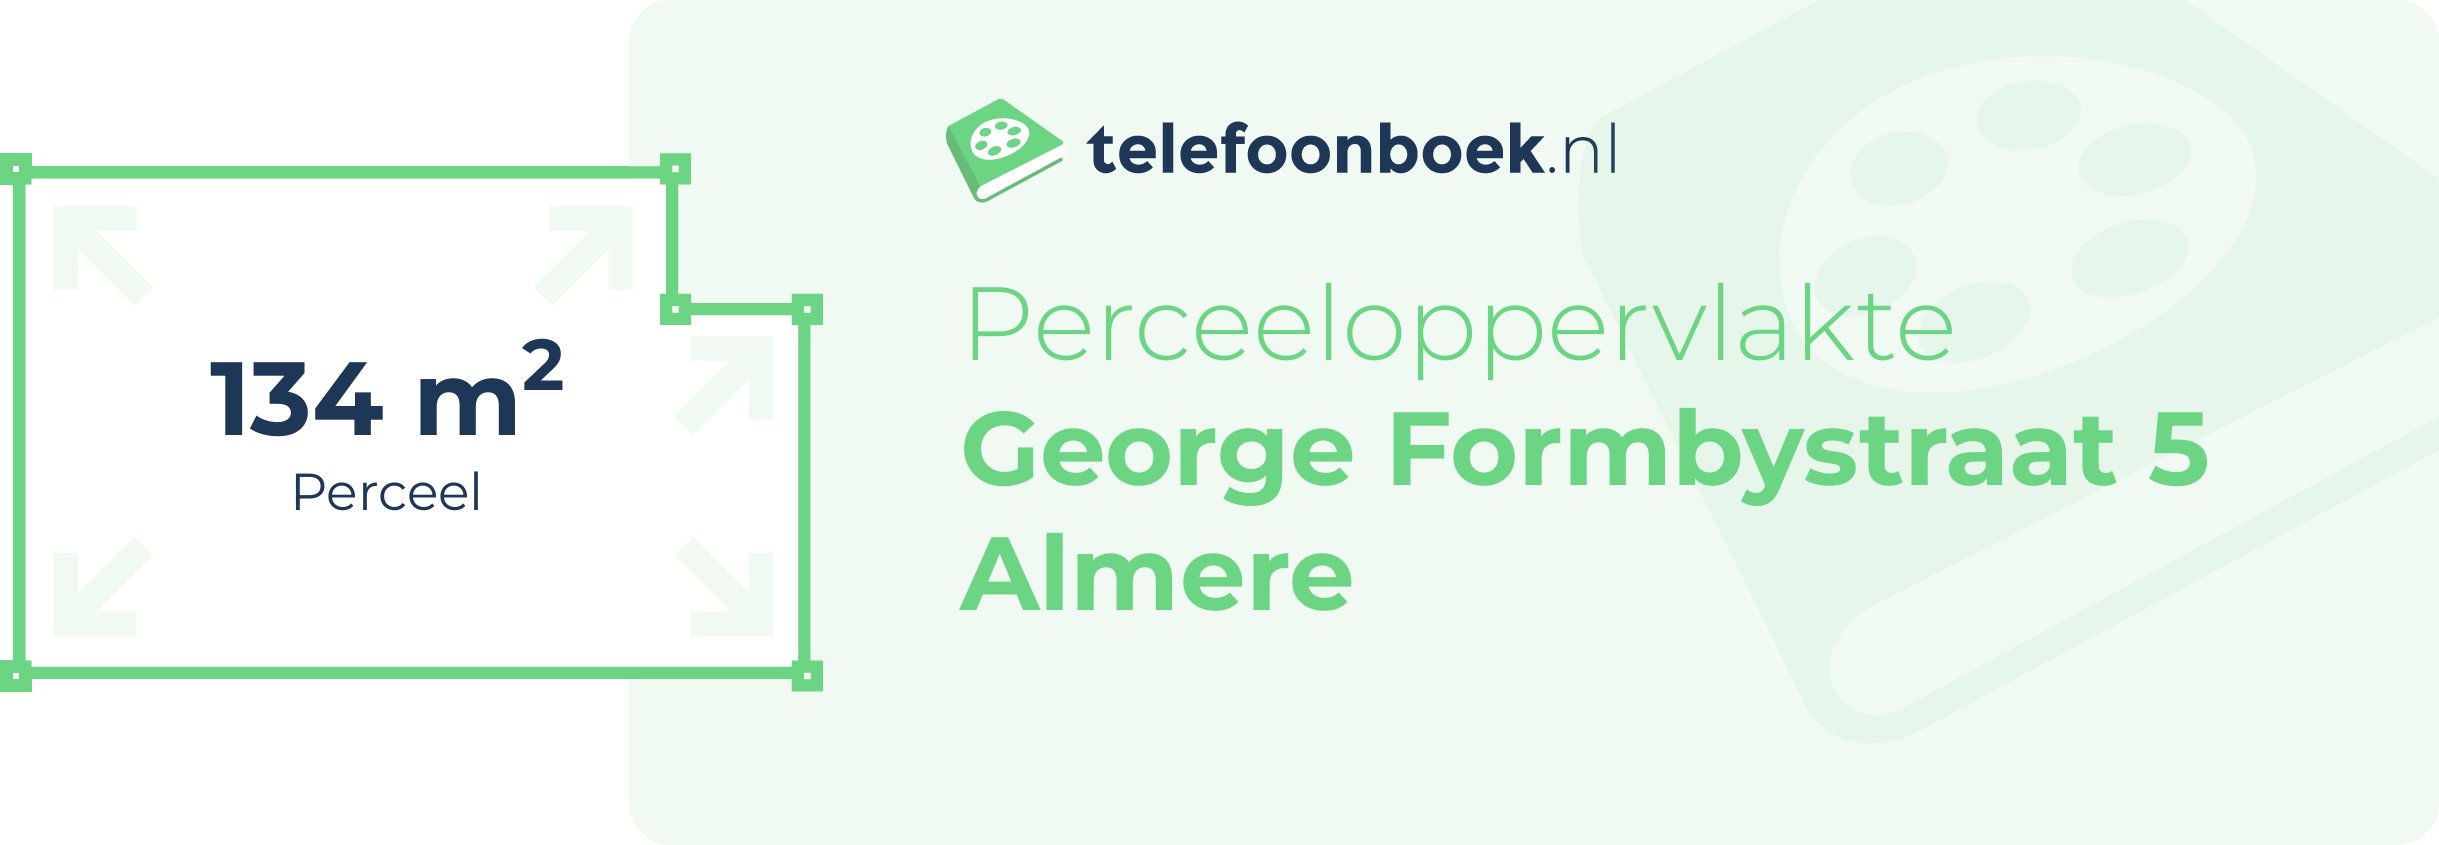 Perceeloppervlakte George Formbystraat 5 Almere